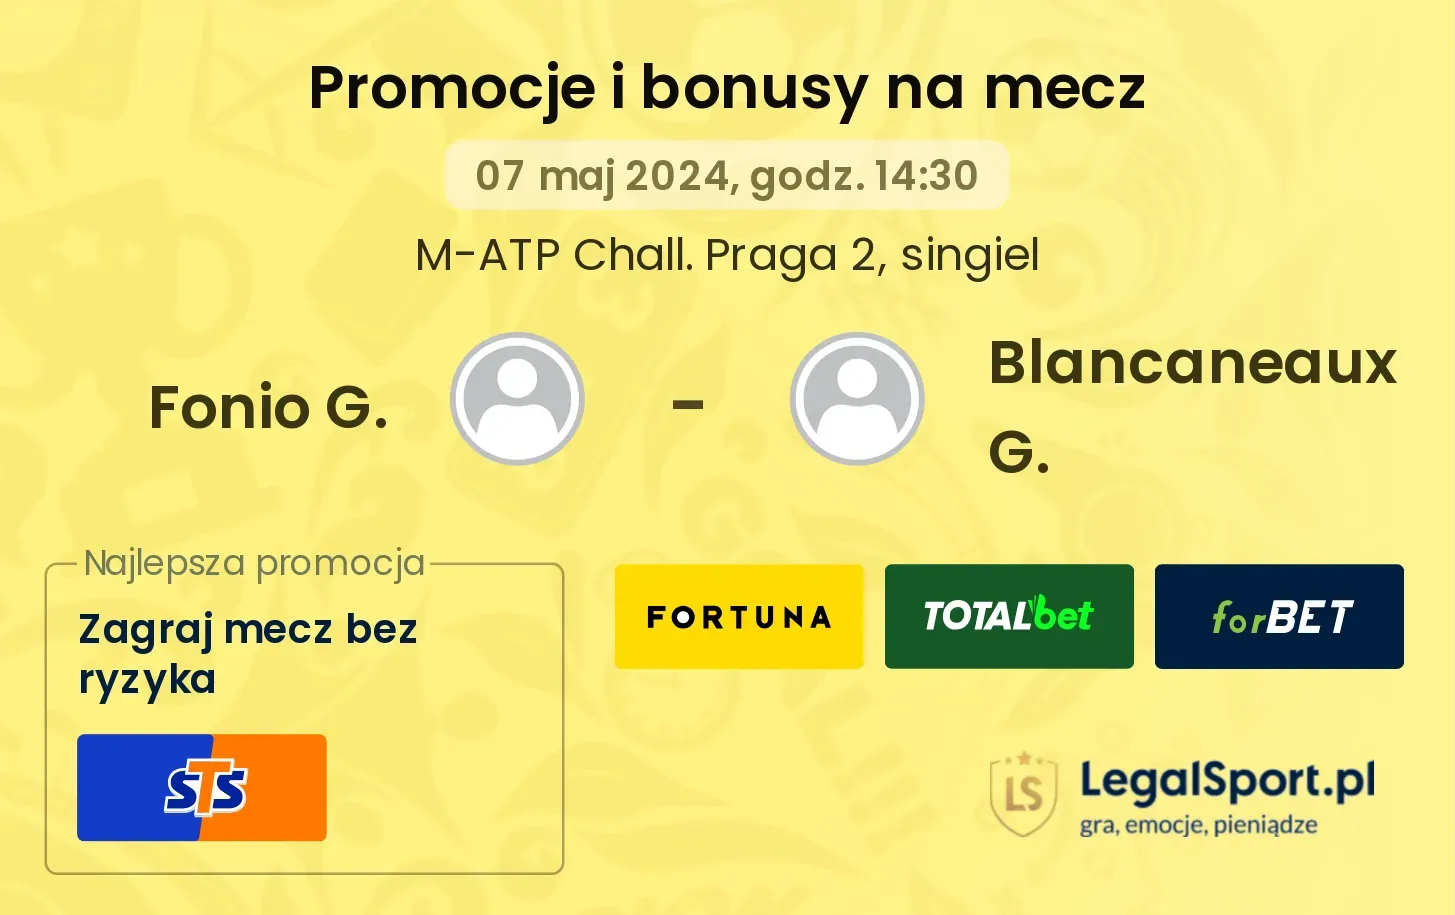 Fonio G. - Blancaneaux G. promocje bonusy na mecz